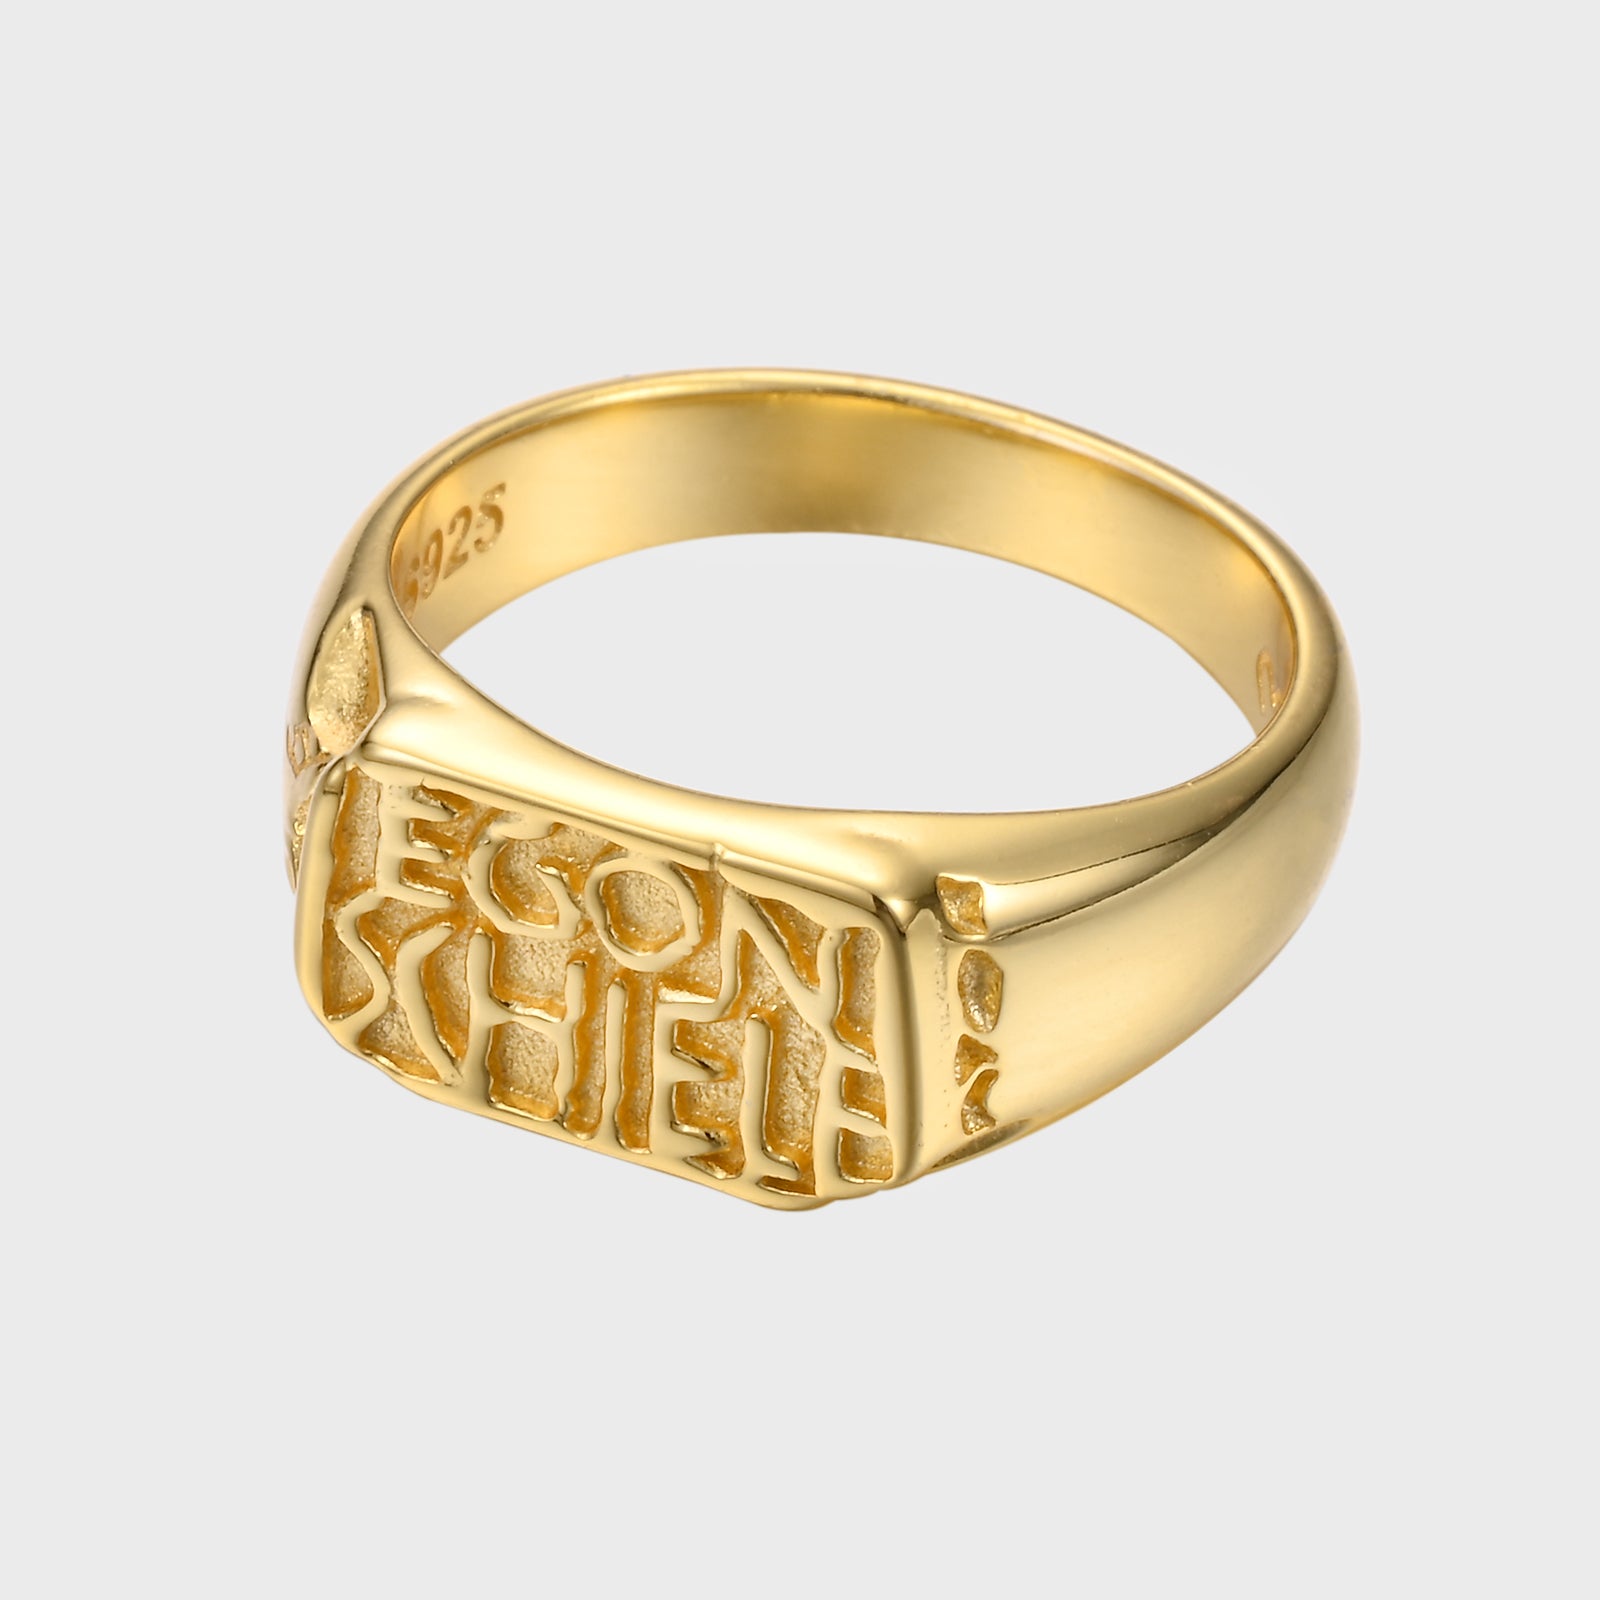 Schiele's signature - Gold Ring